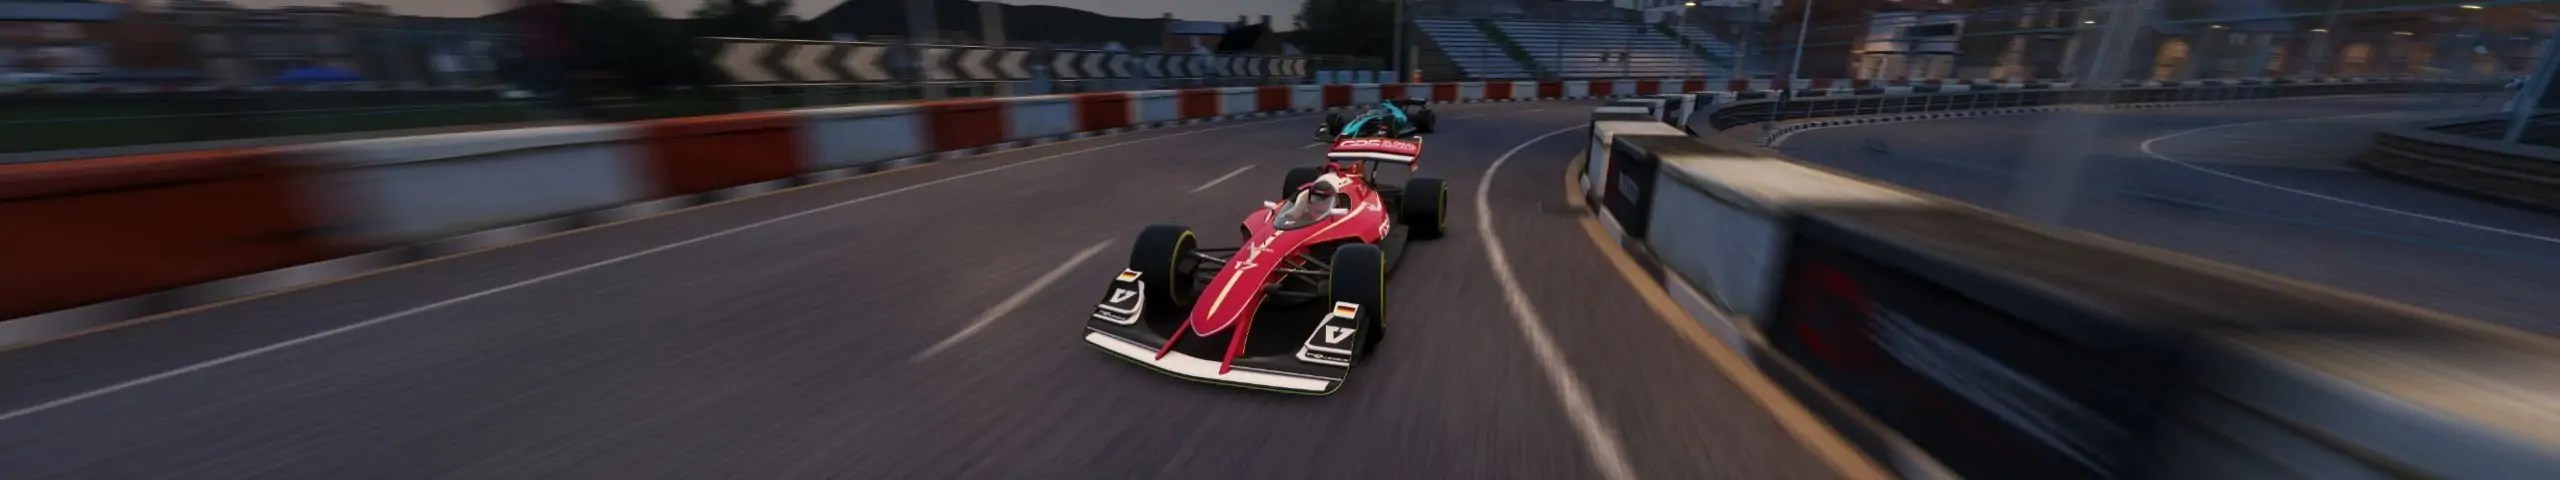 أبوظبي تطلق بطولة V10 لسباقات السيارات الافتراضية